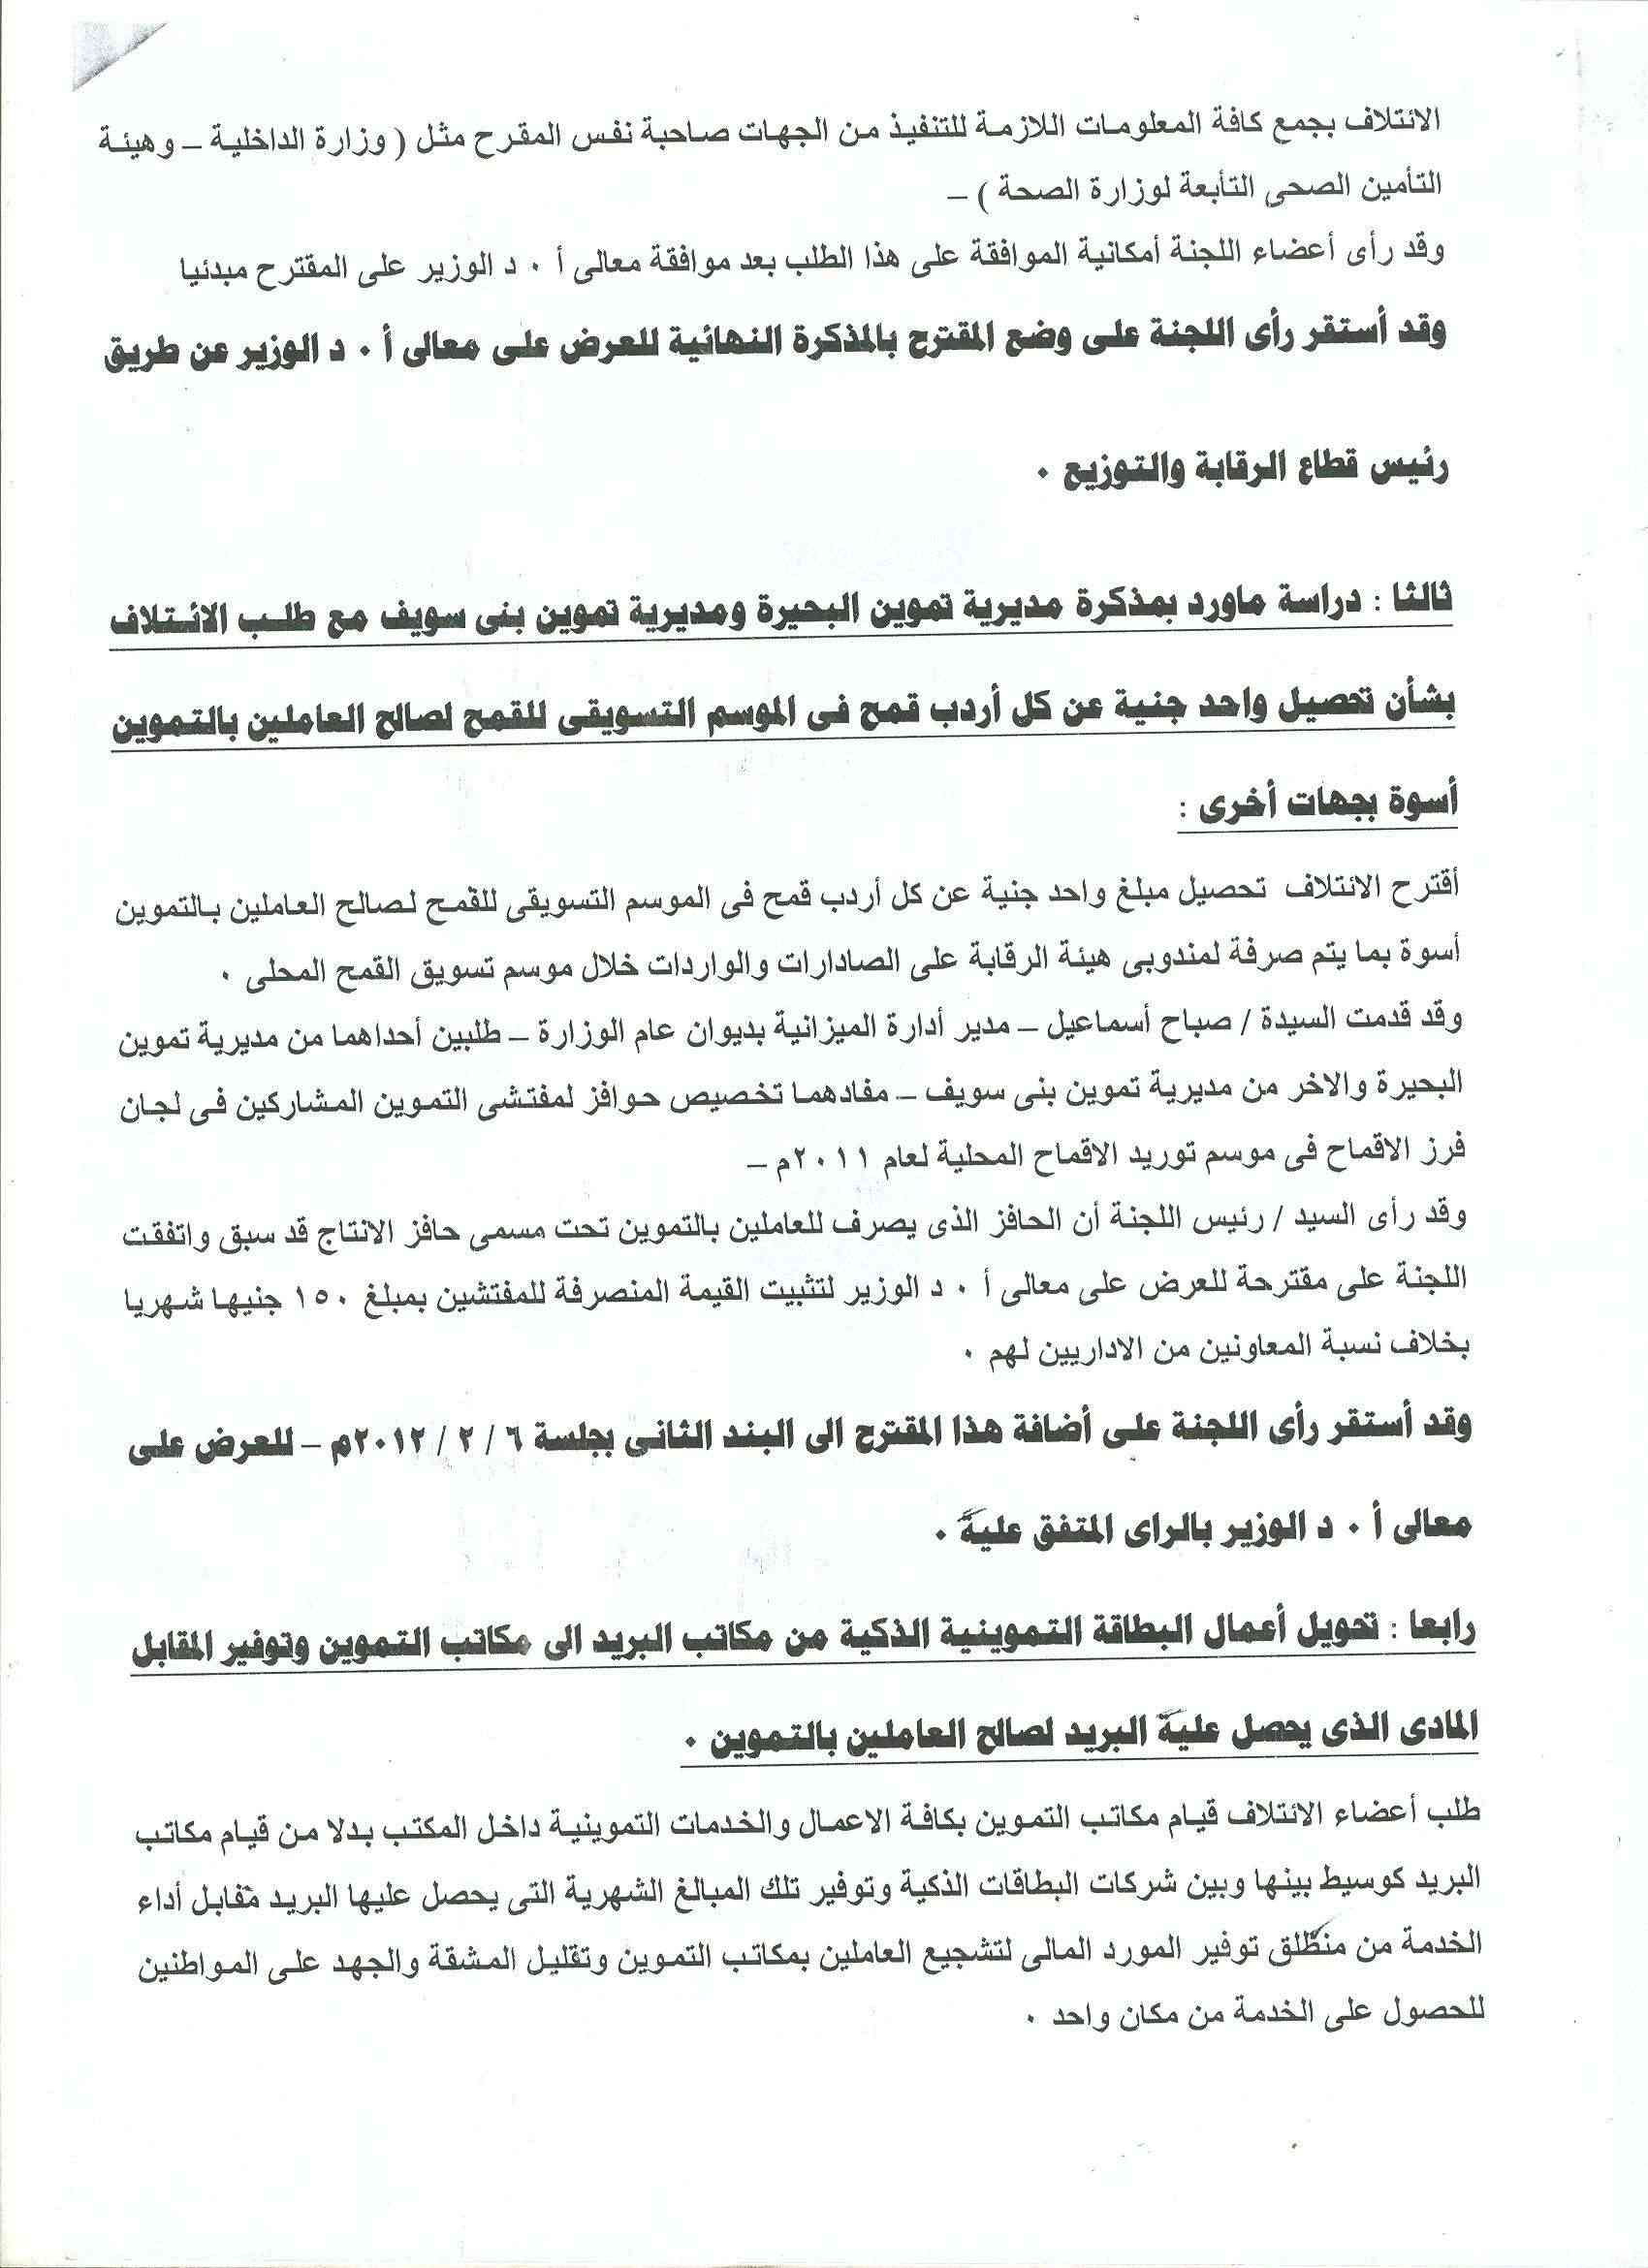 أعمال لجنة الإئتلاف العام للعاملين بتموين مصر بالوزاره خلال شهر فبراير 2012 - صفحة 2 15-310